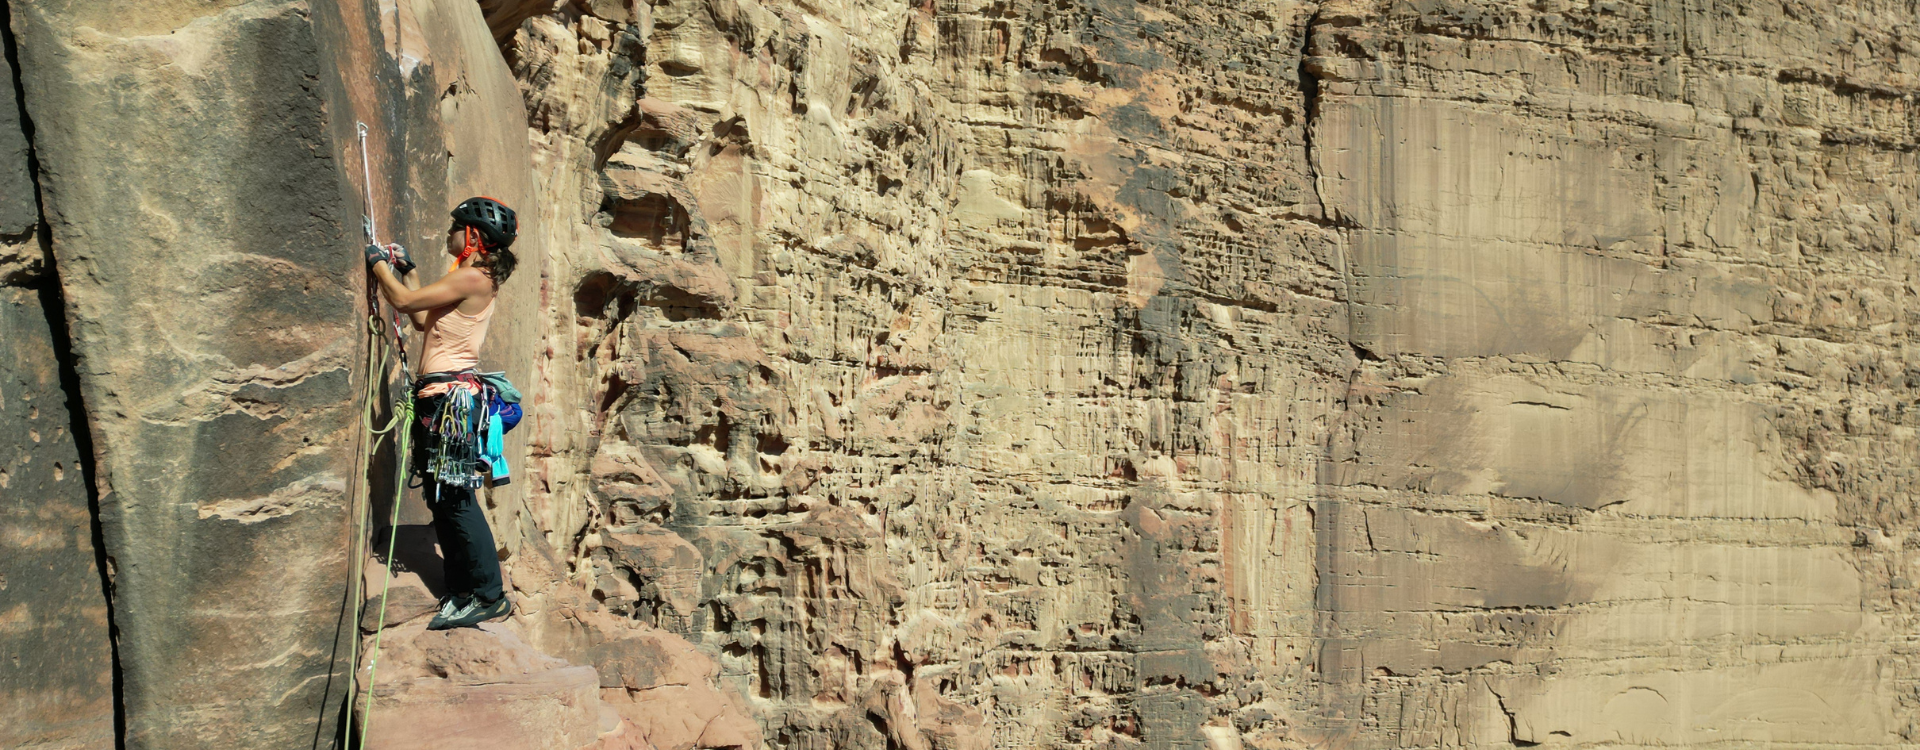 Mujer escalando en una inmensa pared de roca